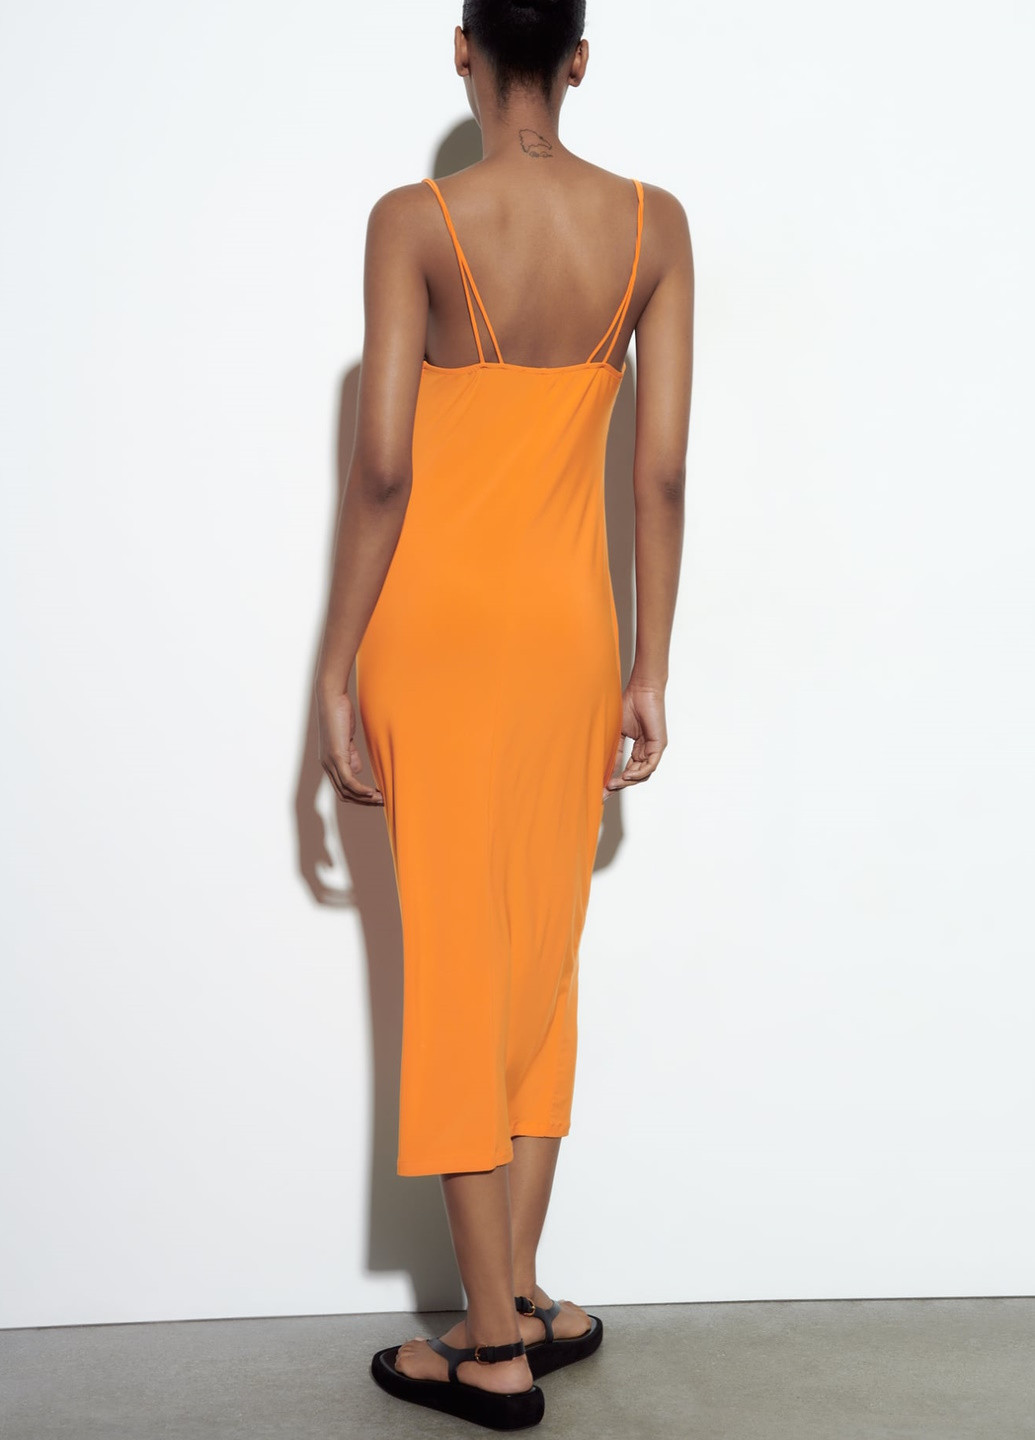 Оранжевое праздничный платье Zara однотонное